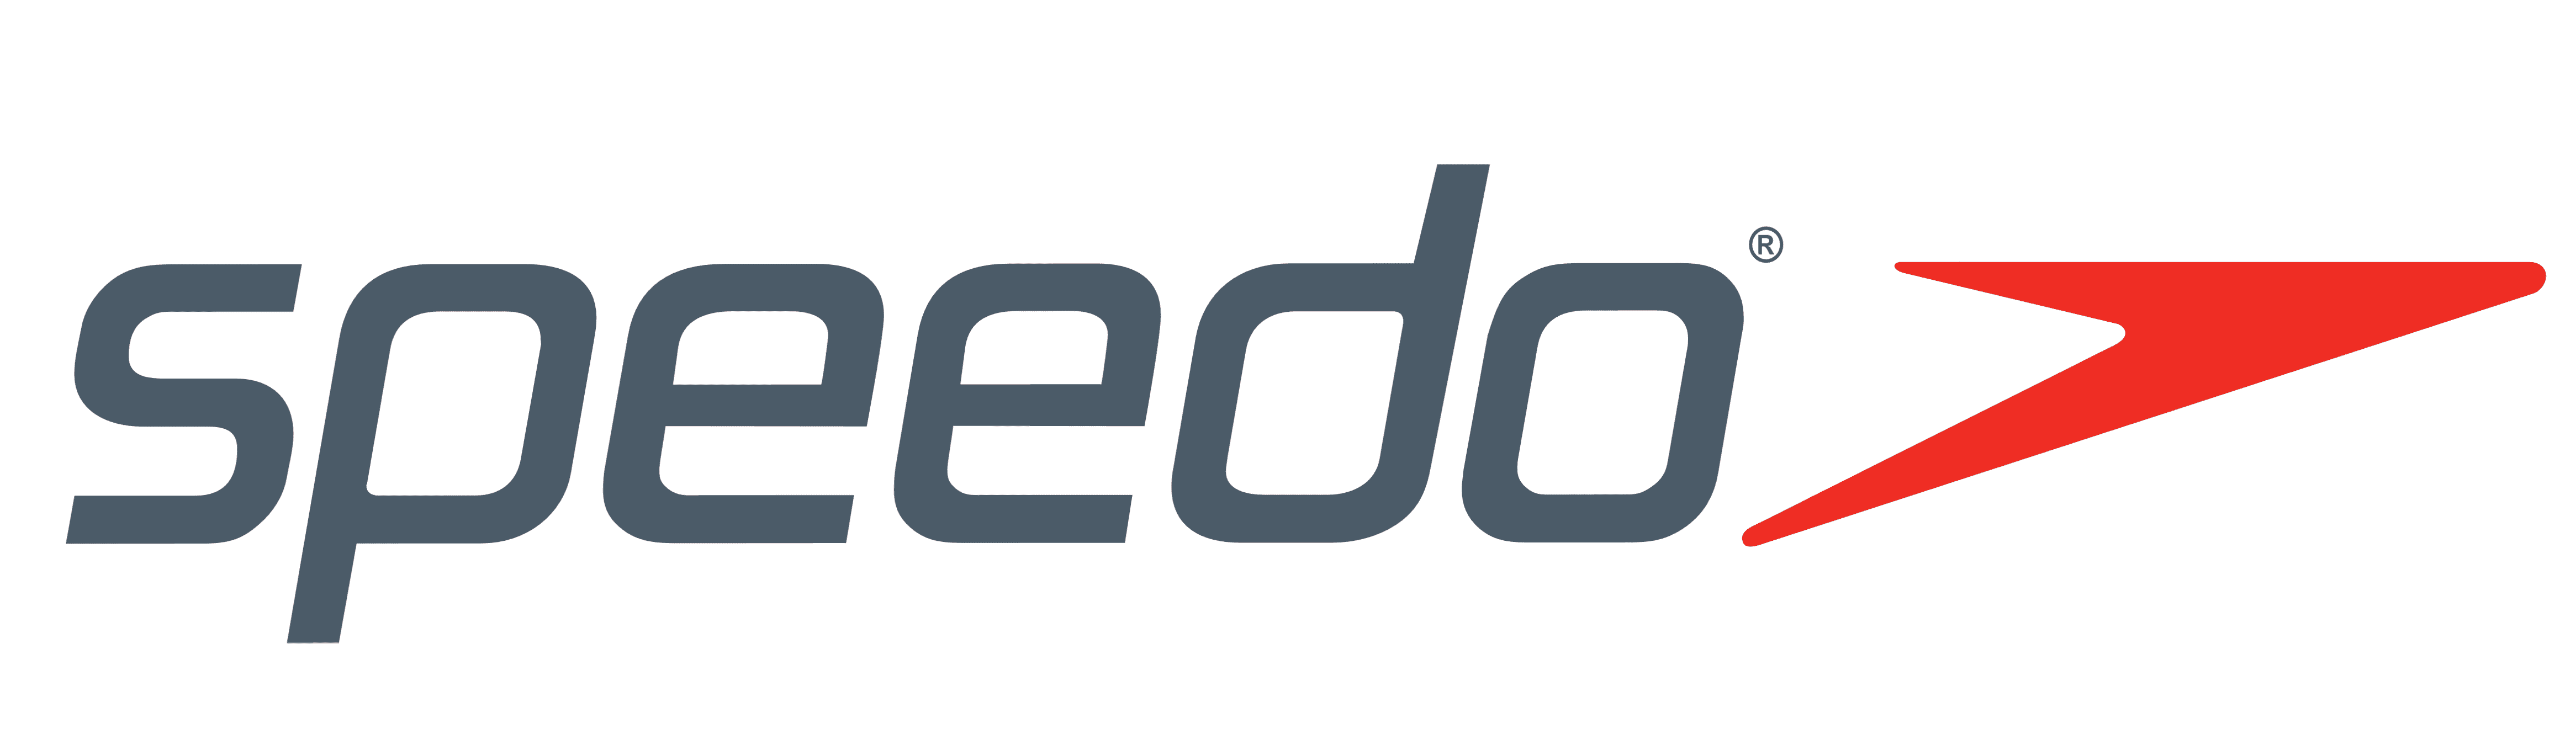 Speedo-Logo1